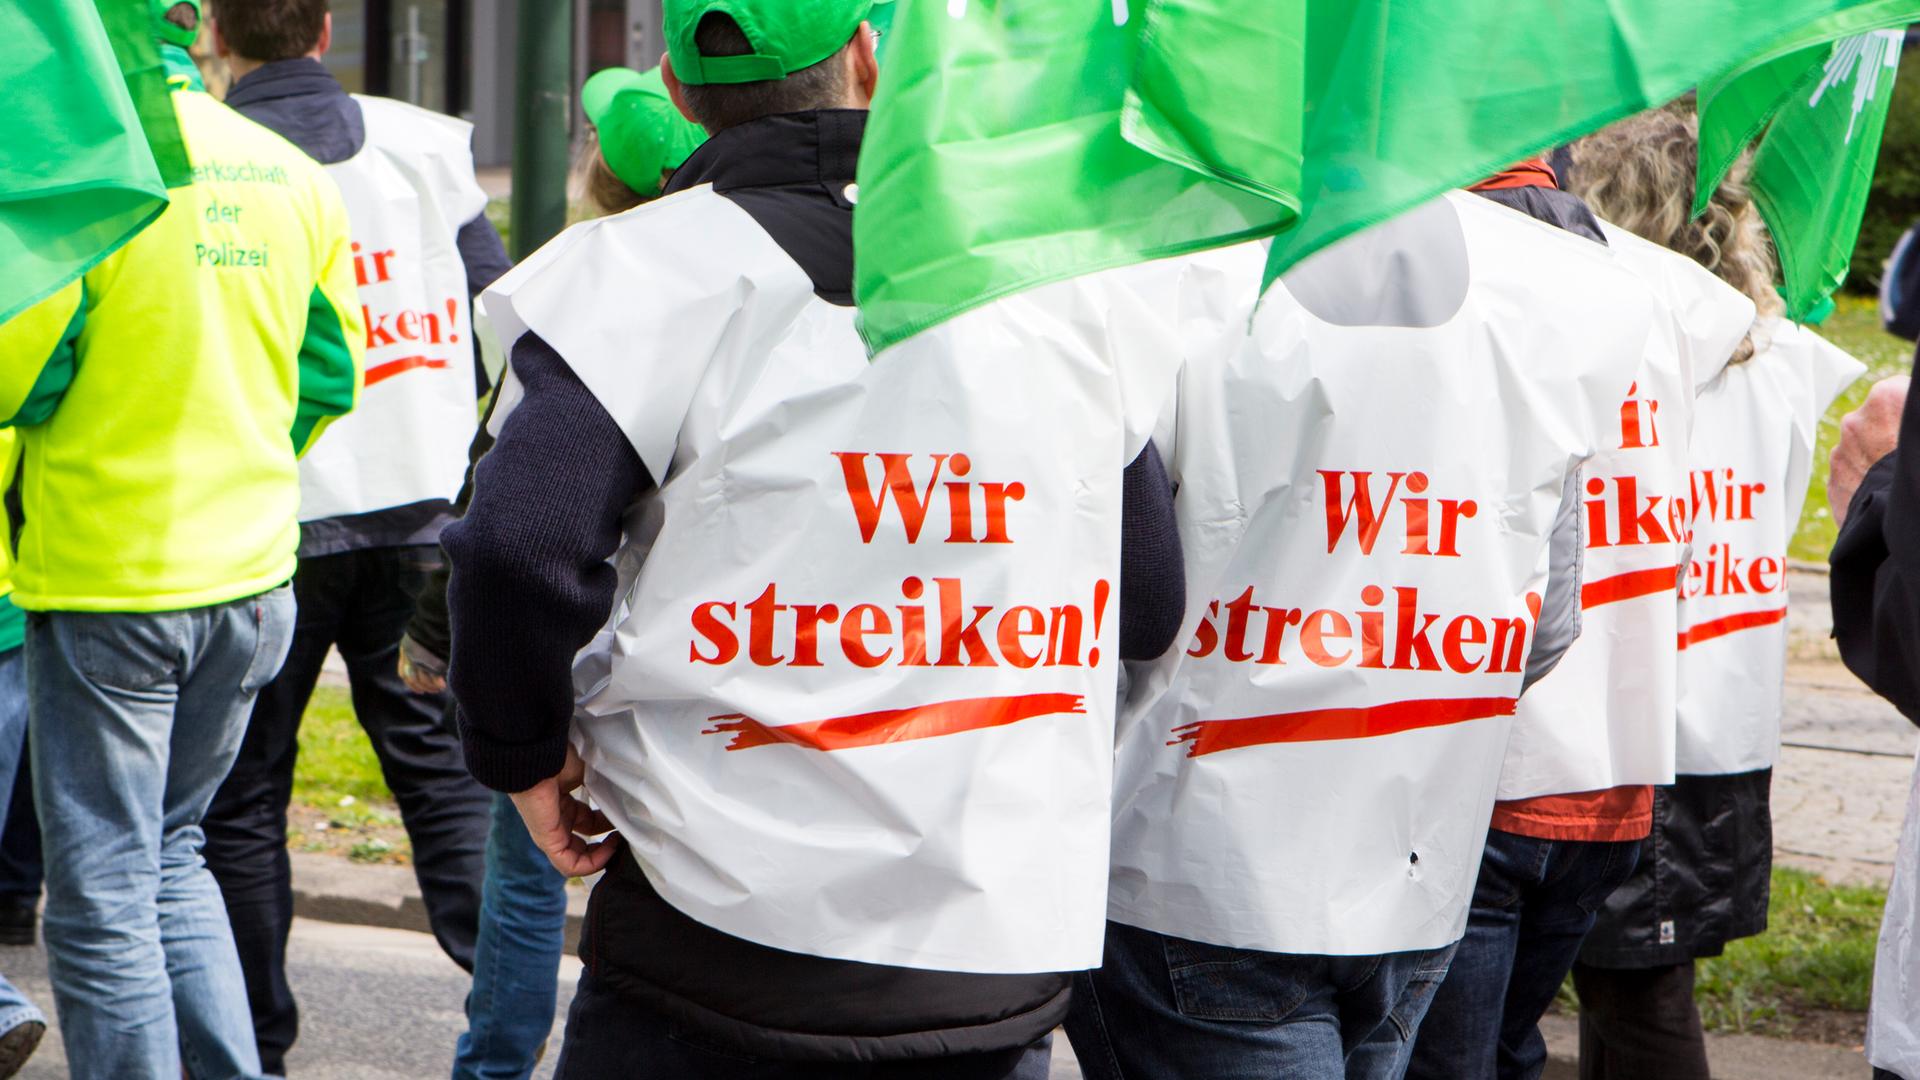 Personen mit Westen auf denen "Wir streiken" steht demonstrieren für Lohnerhöhungen.